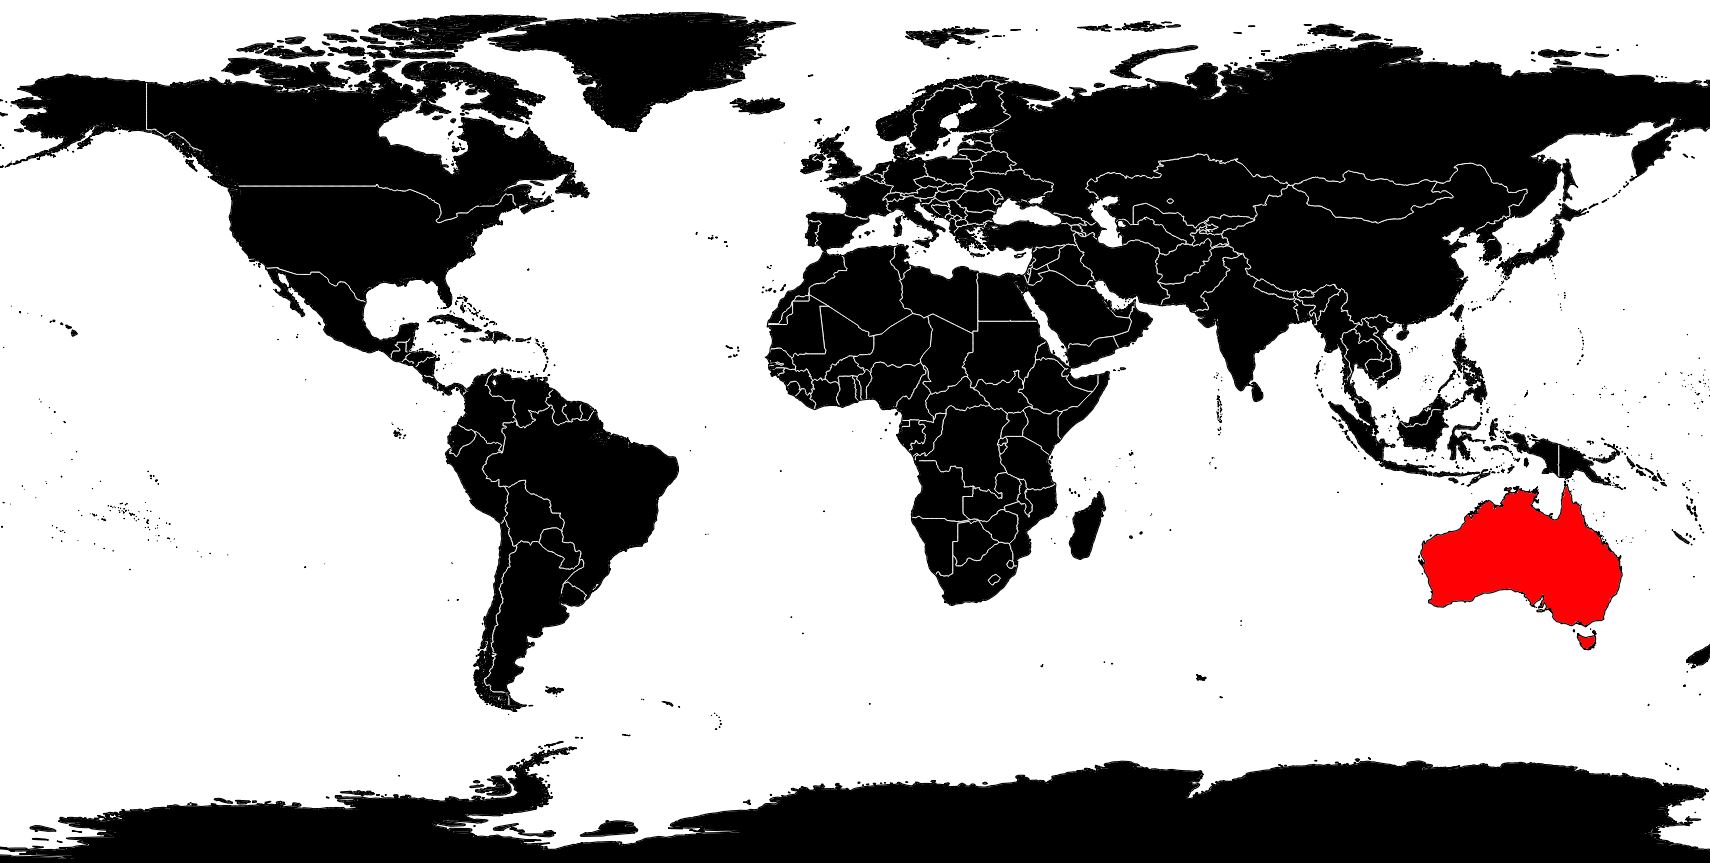 carte du monde australie